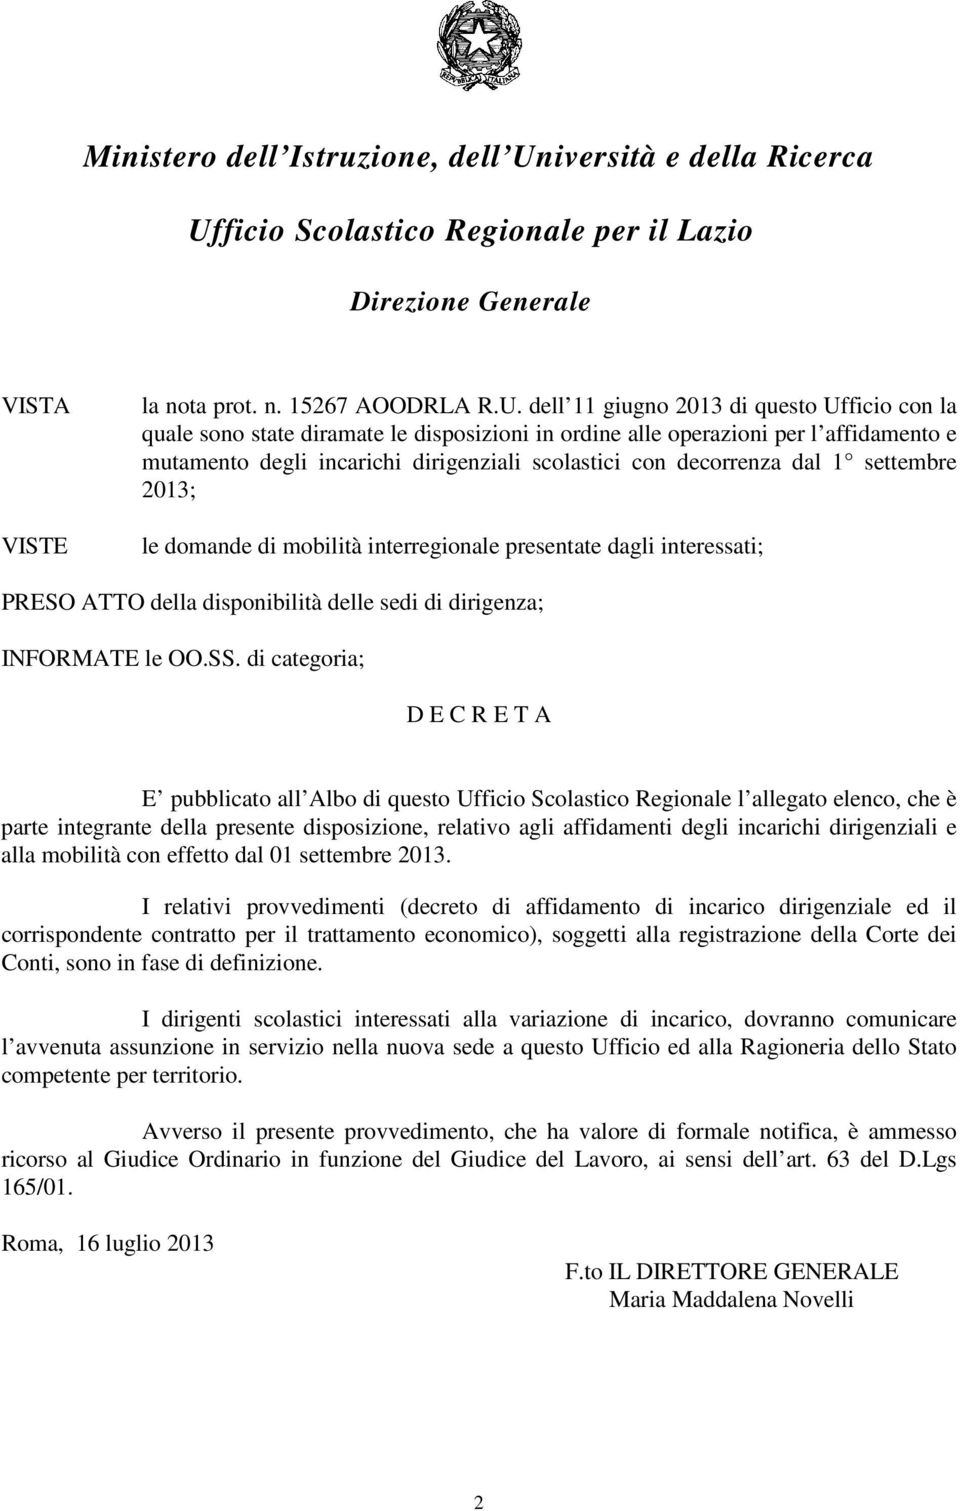 ficio Scolastico Regionale per il Lazio Direzione Generale VISTA VISTE la nota prot. n. 15267 AOODRLA R.U.